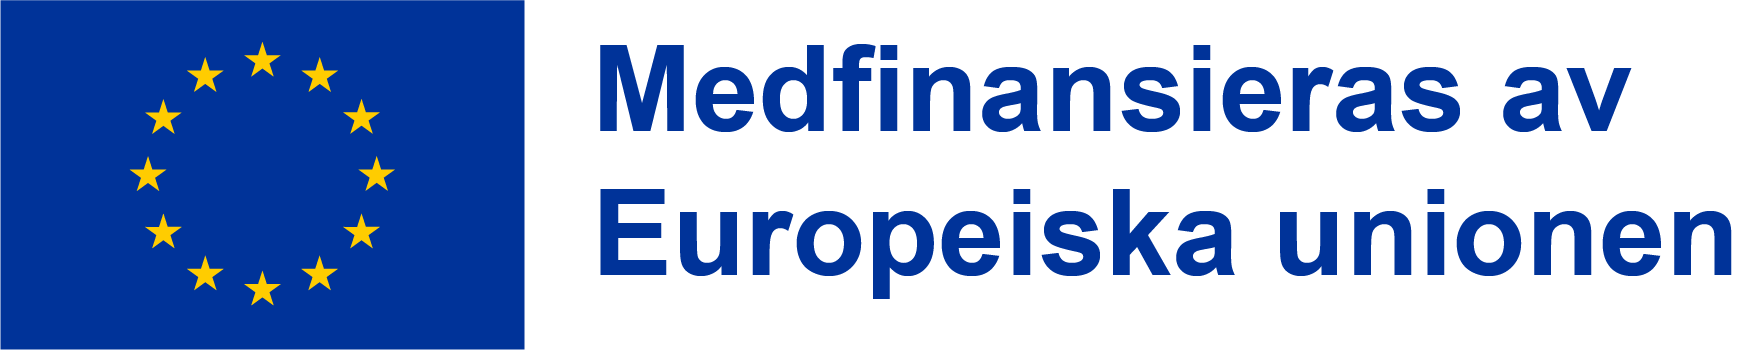 Logotyp - Medfinansieras av Europeiska unionen